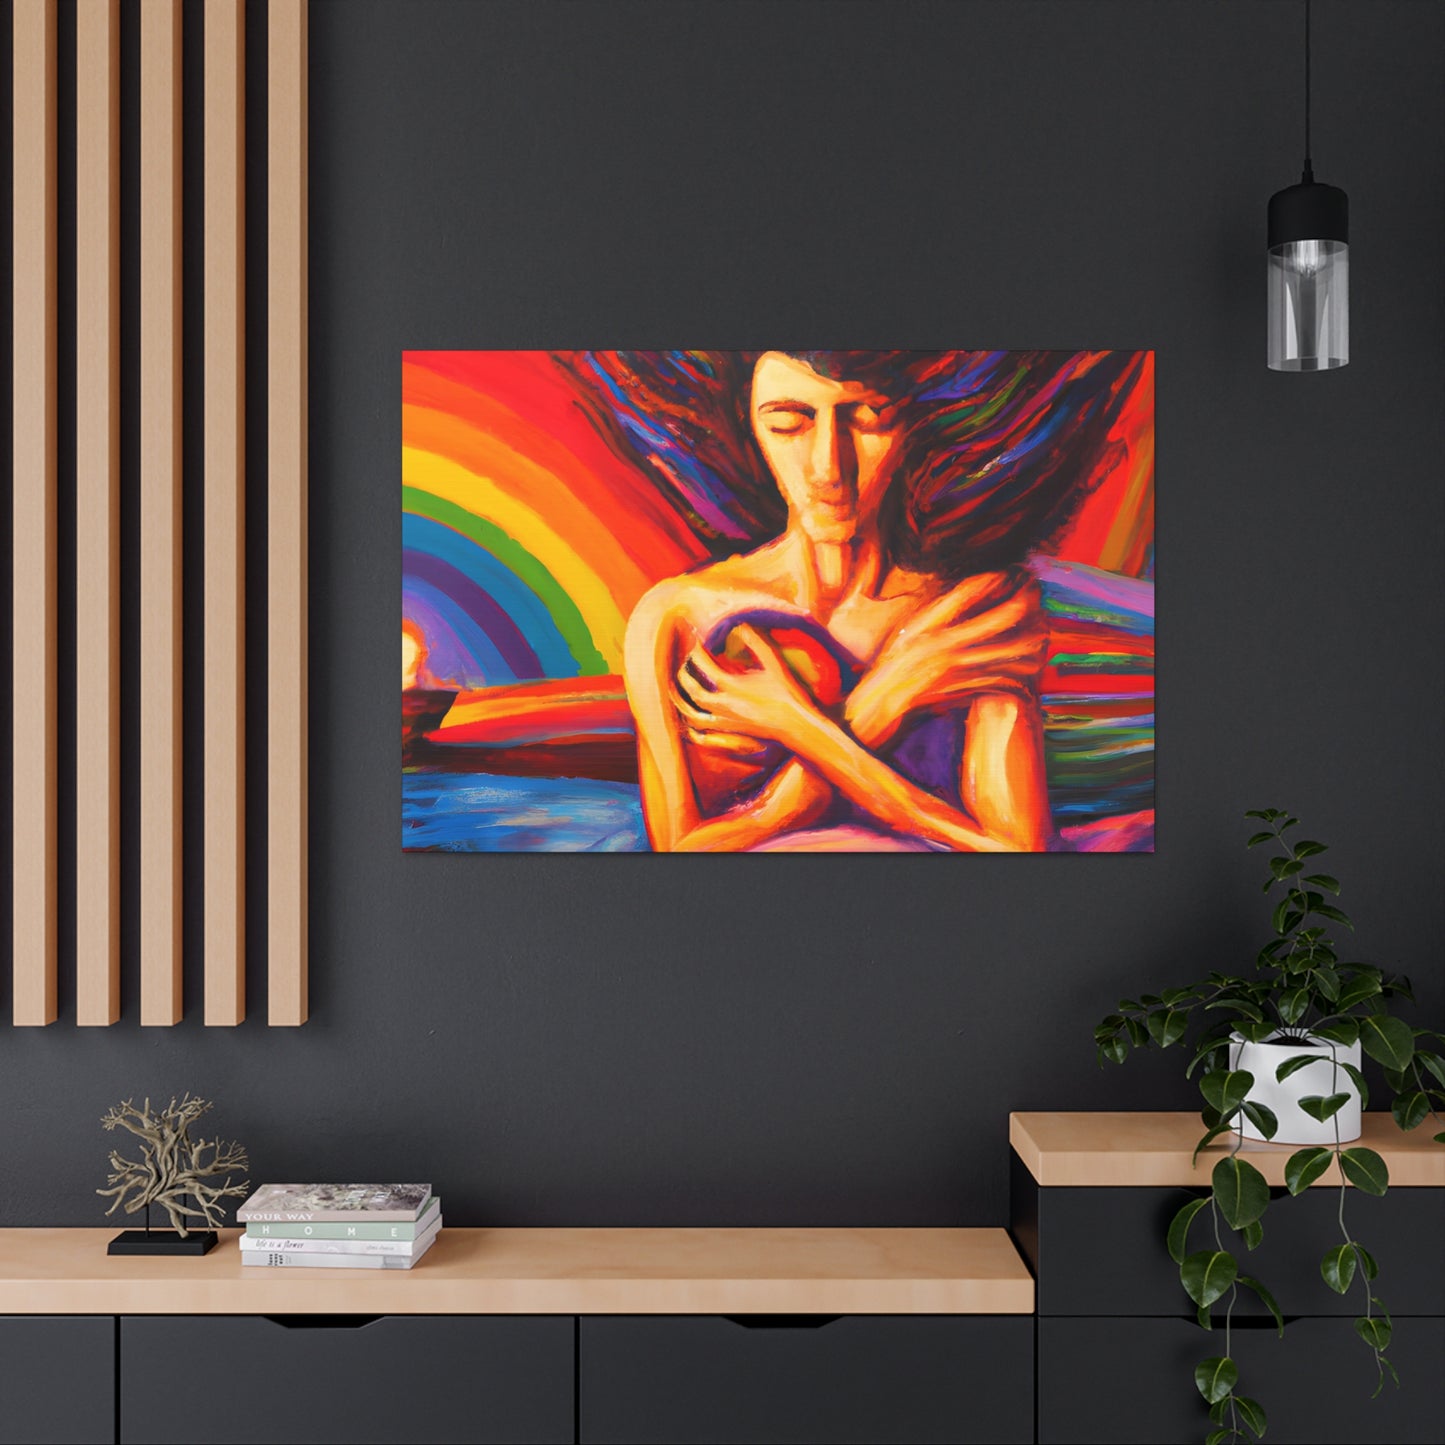 Verrocchio - Gay Hope Canvas Art